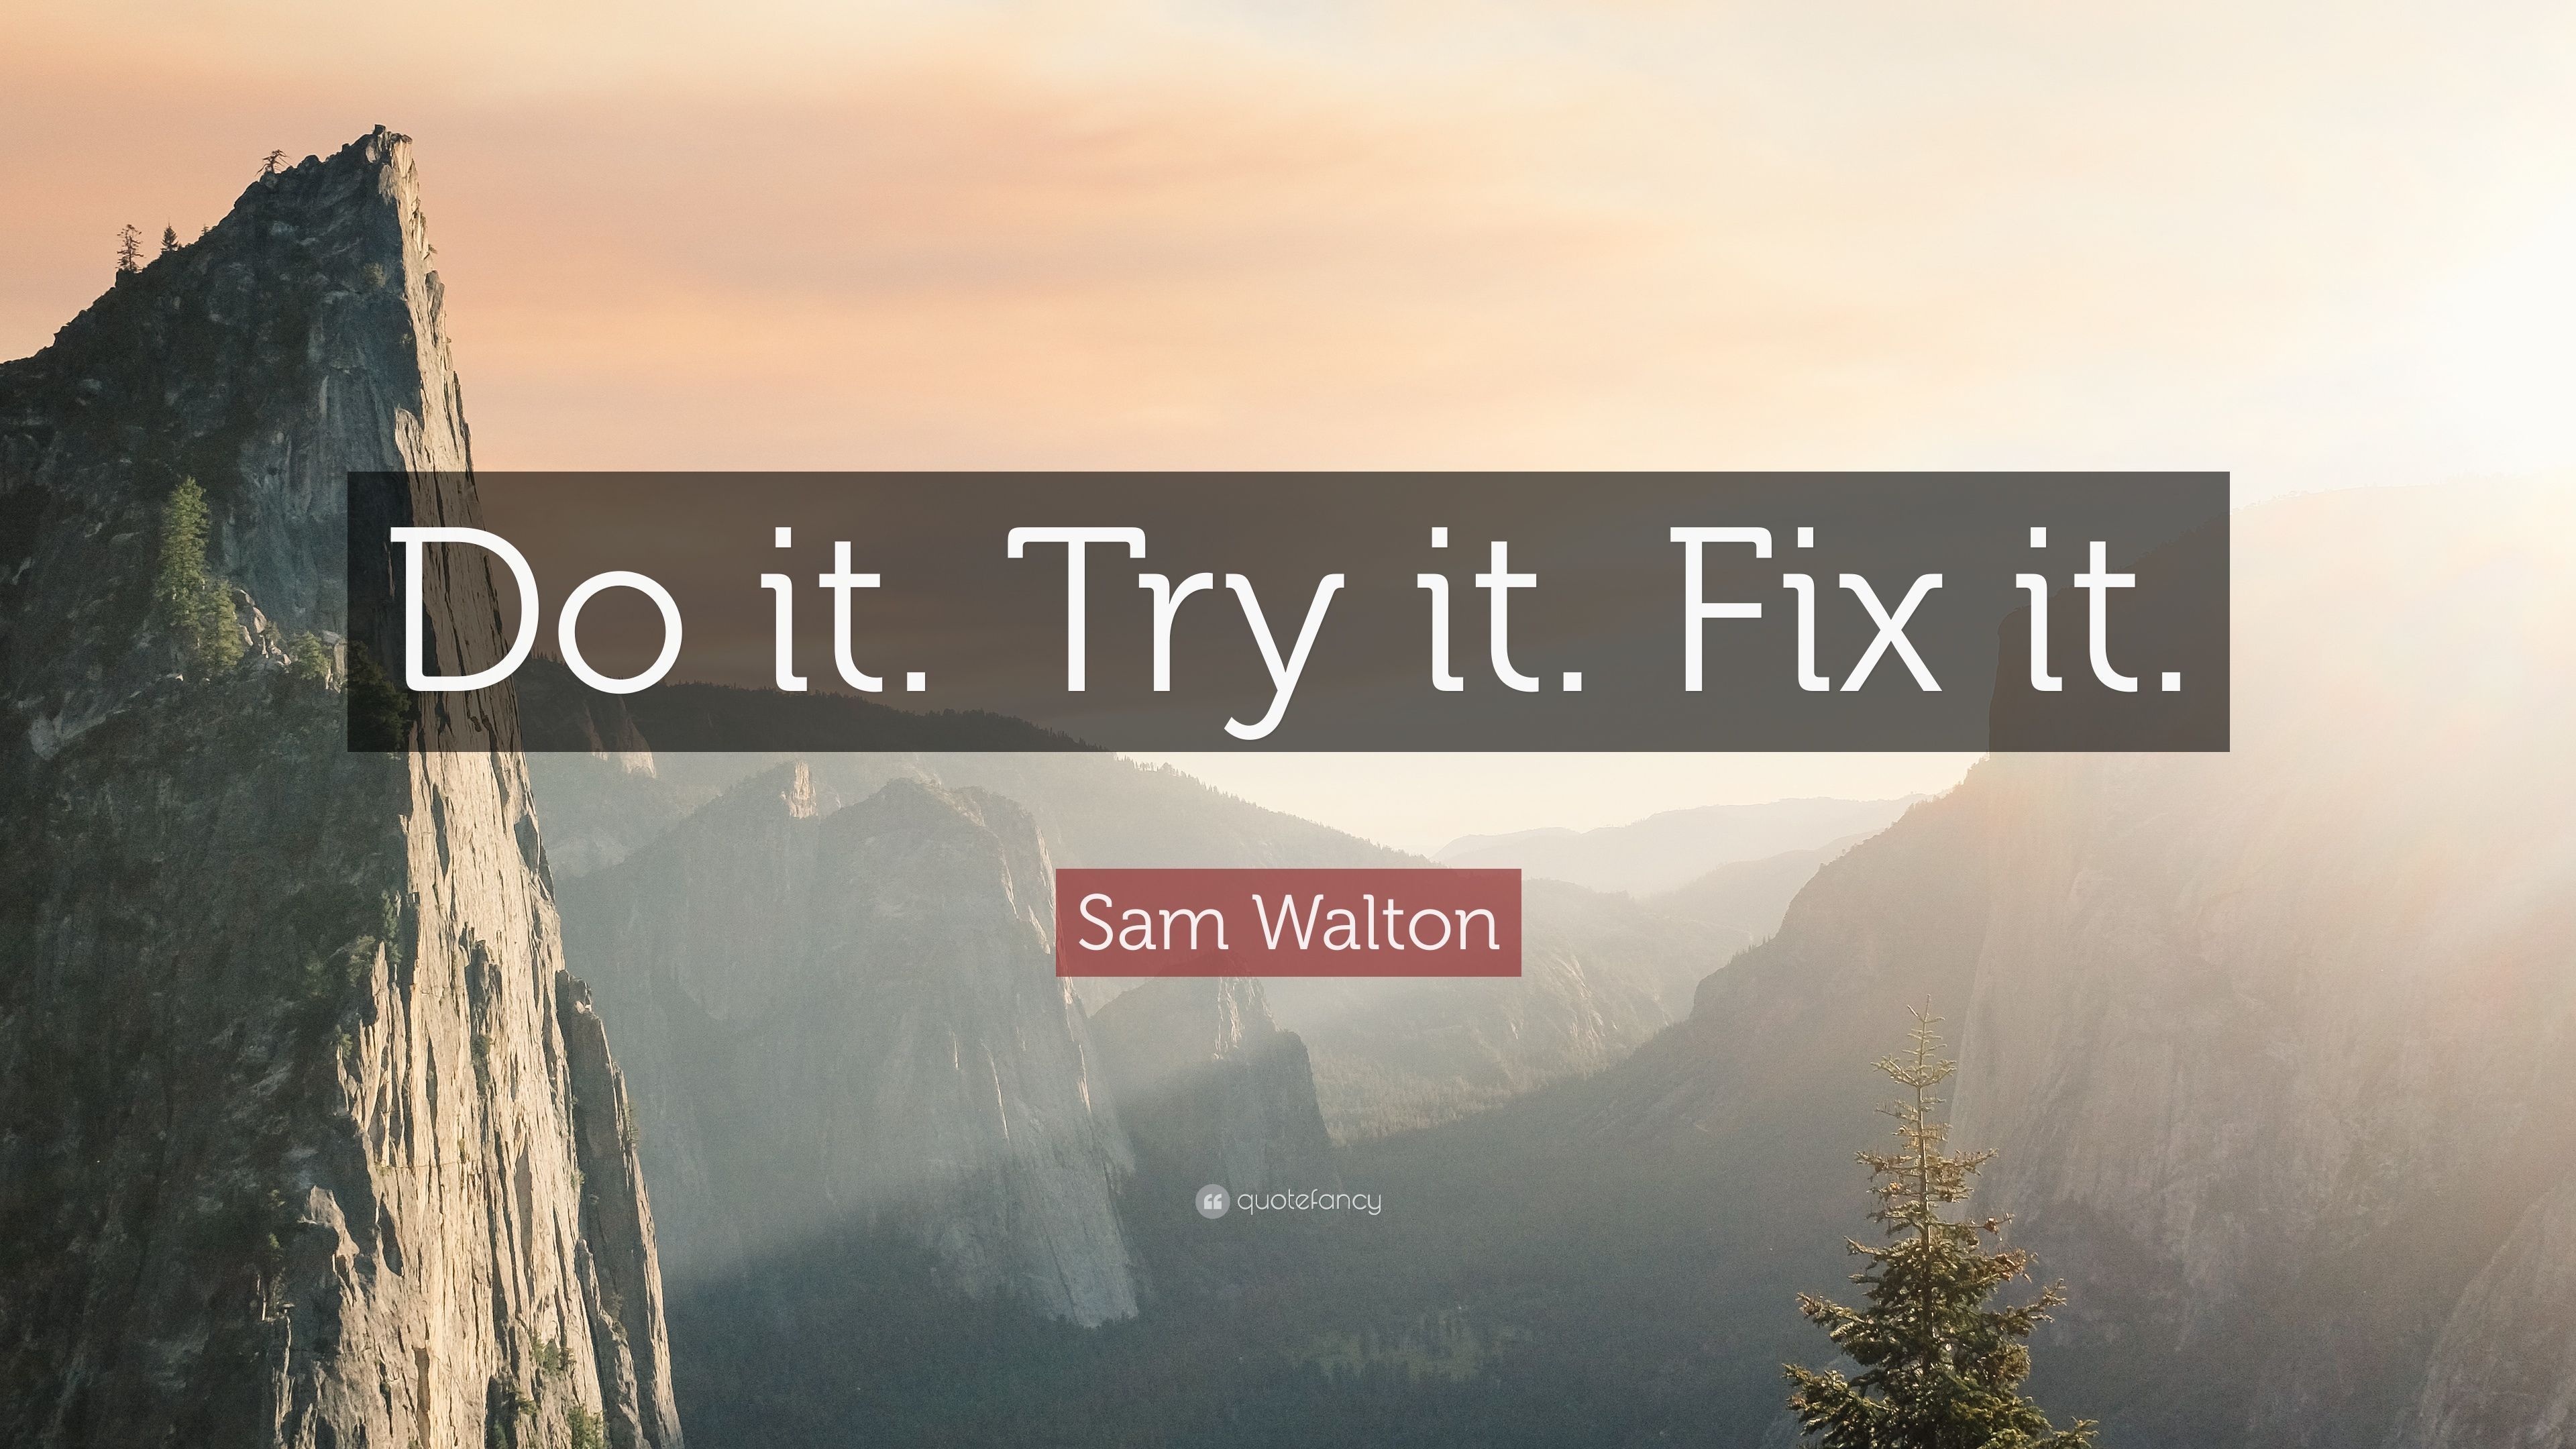 Sam Walton Quote: “Do it. Try it. Fix it.” 10 wallpaper